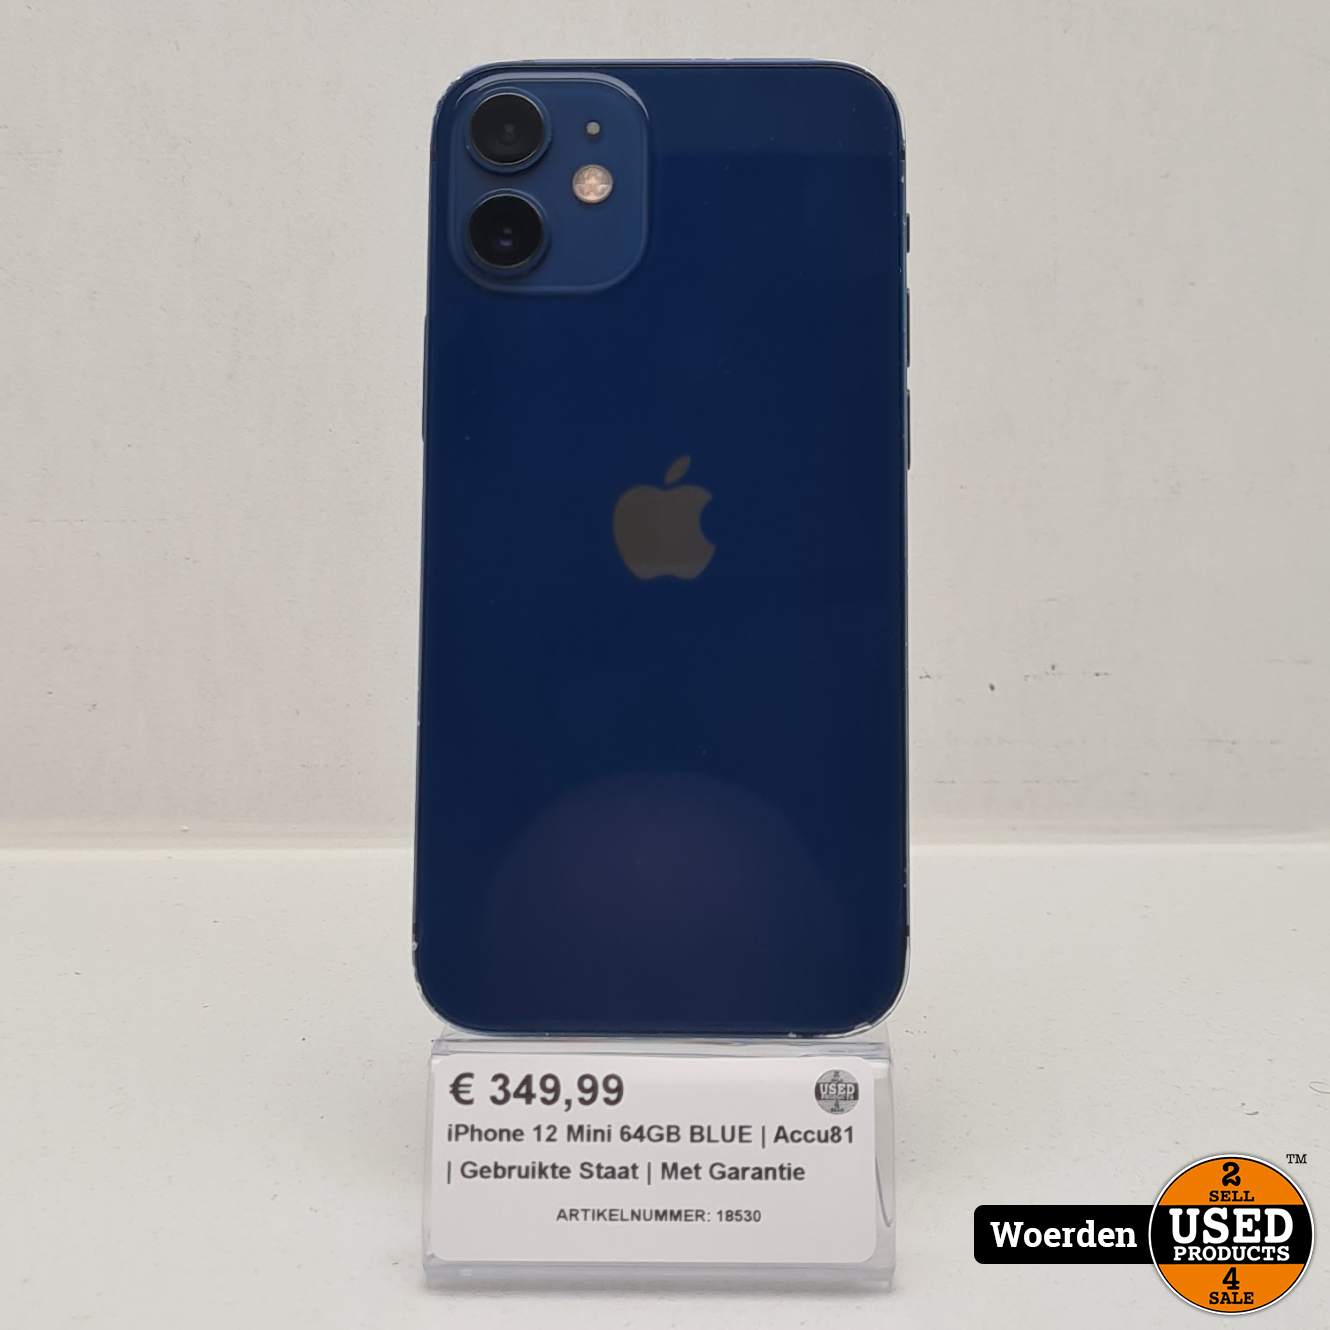 cowboy gevangenis slogan Apple iPhone 12 Mini 64GB BLUE | Accu81 | Gebruikte Staat | Met Garantie -  Used Products Woerden